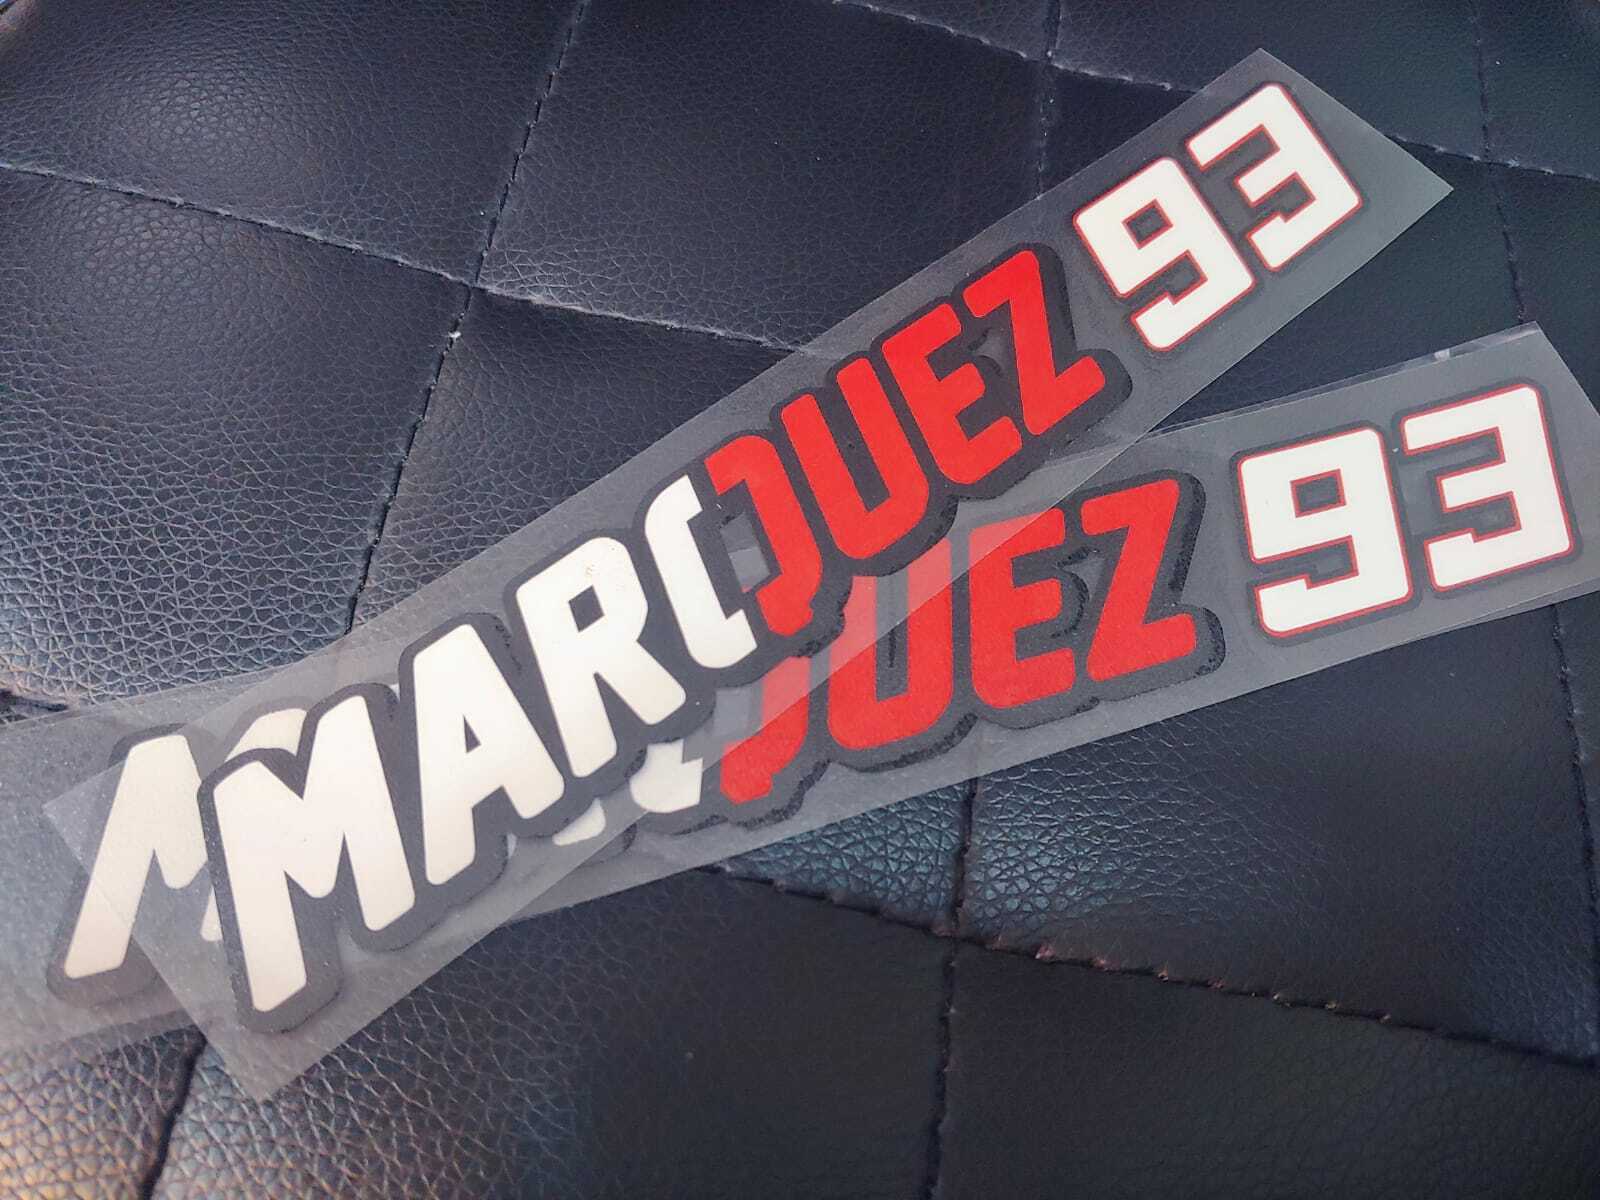 Marc Marquez - HD Wallpaper 